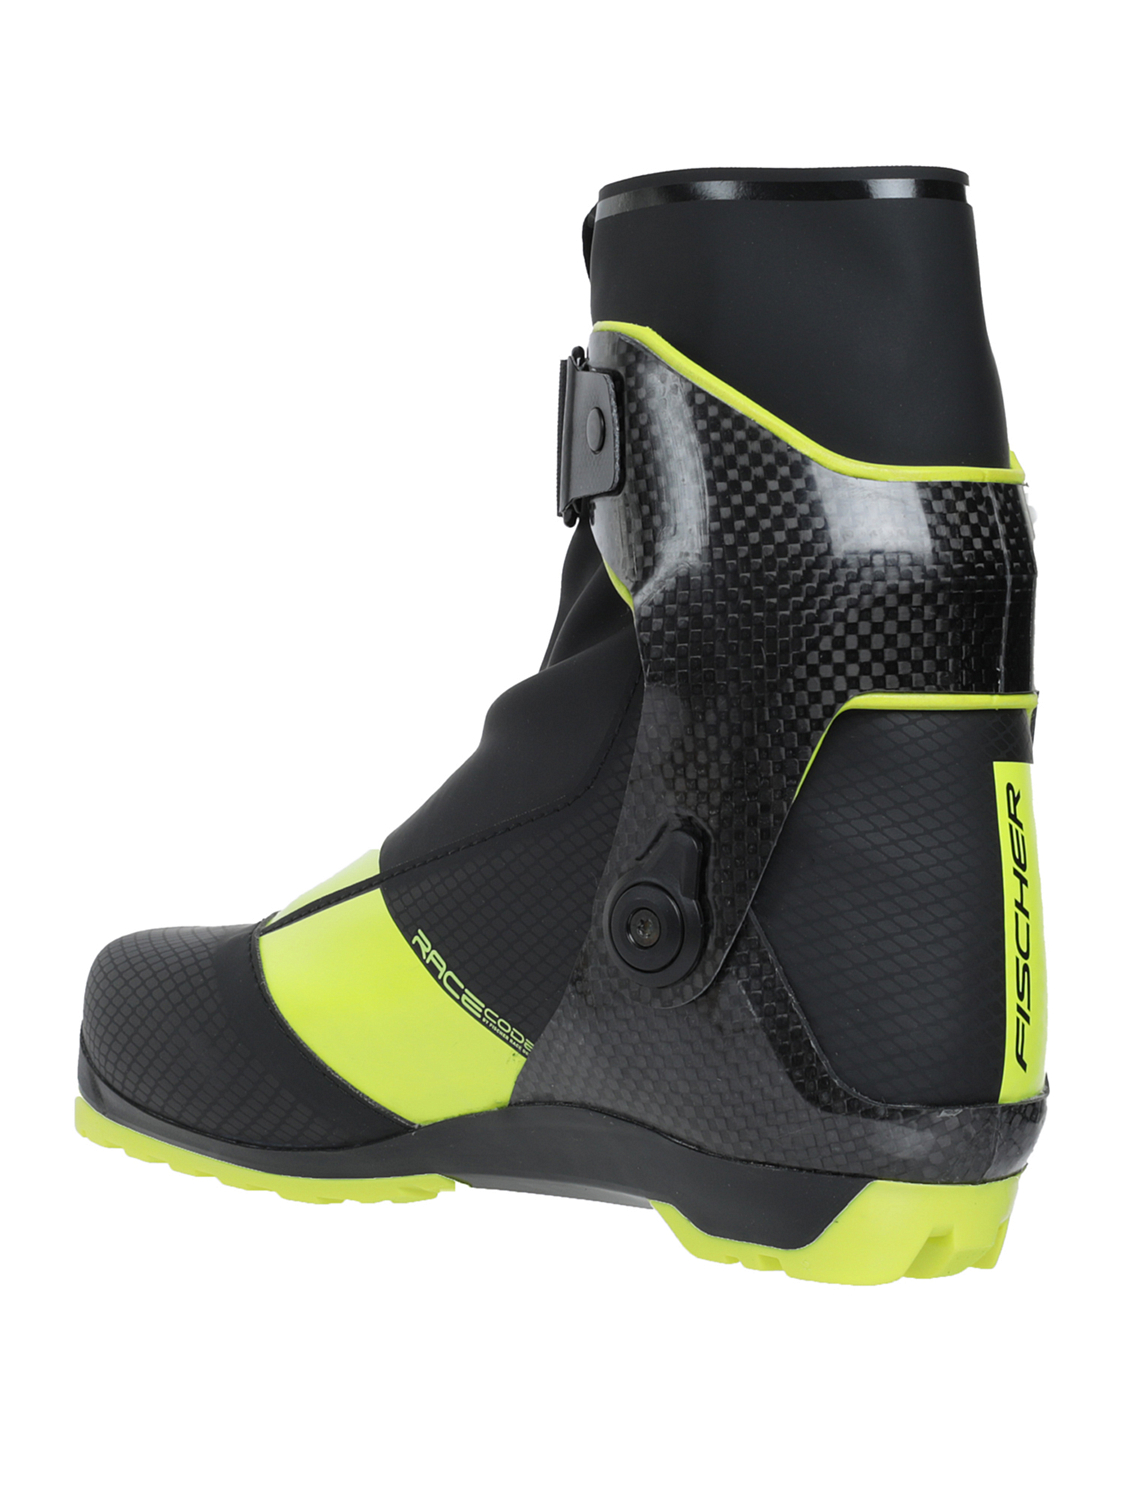 Лыжные ботинки FISCHER 2021-22 Carbonlite Skate – купить по цене 35990 руб,магазин «Кант»